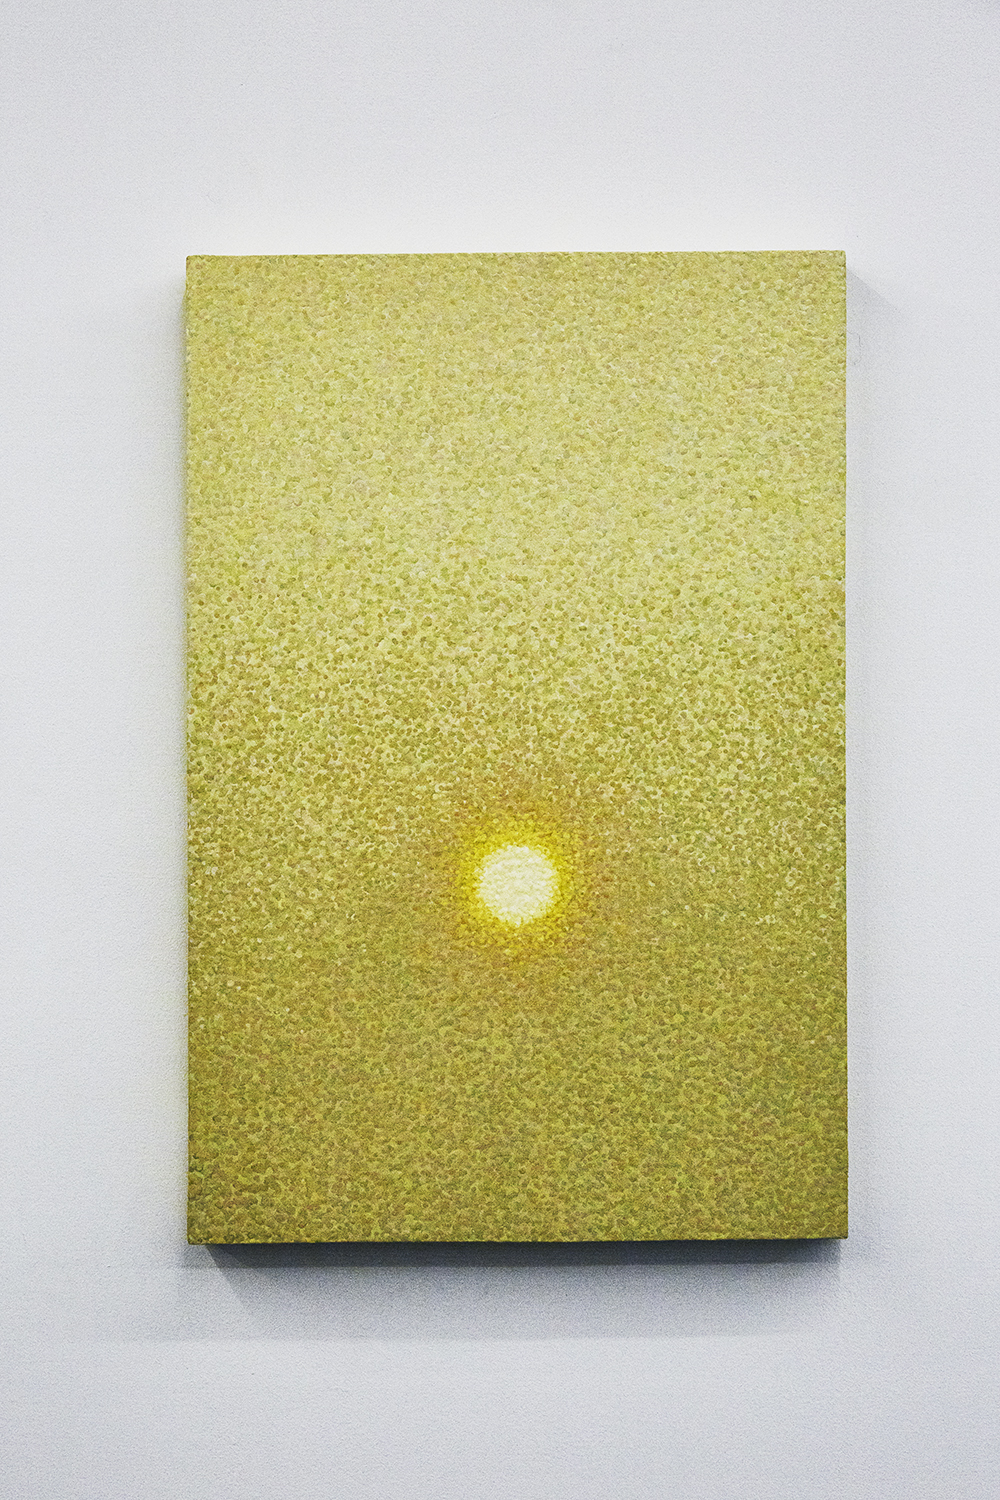 Cyrielle Gulacsy, Lumière terrestre (Galerie Anne-Sarah Benichou)